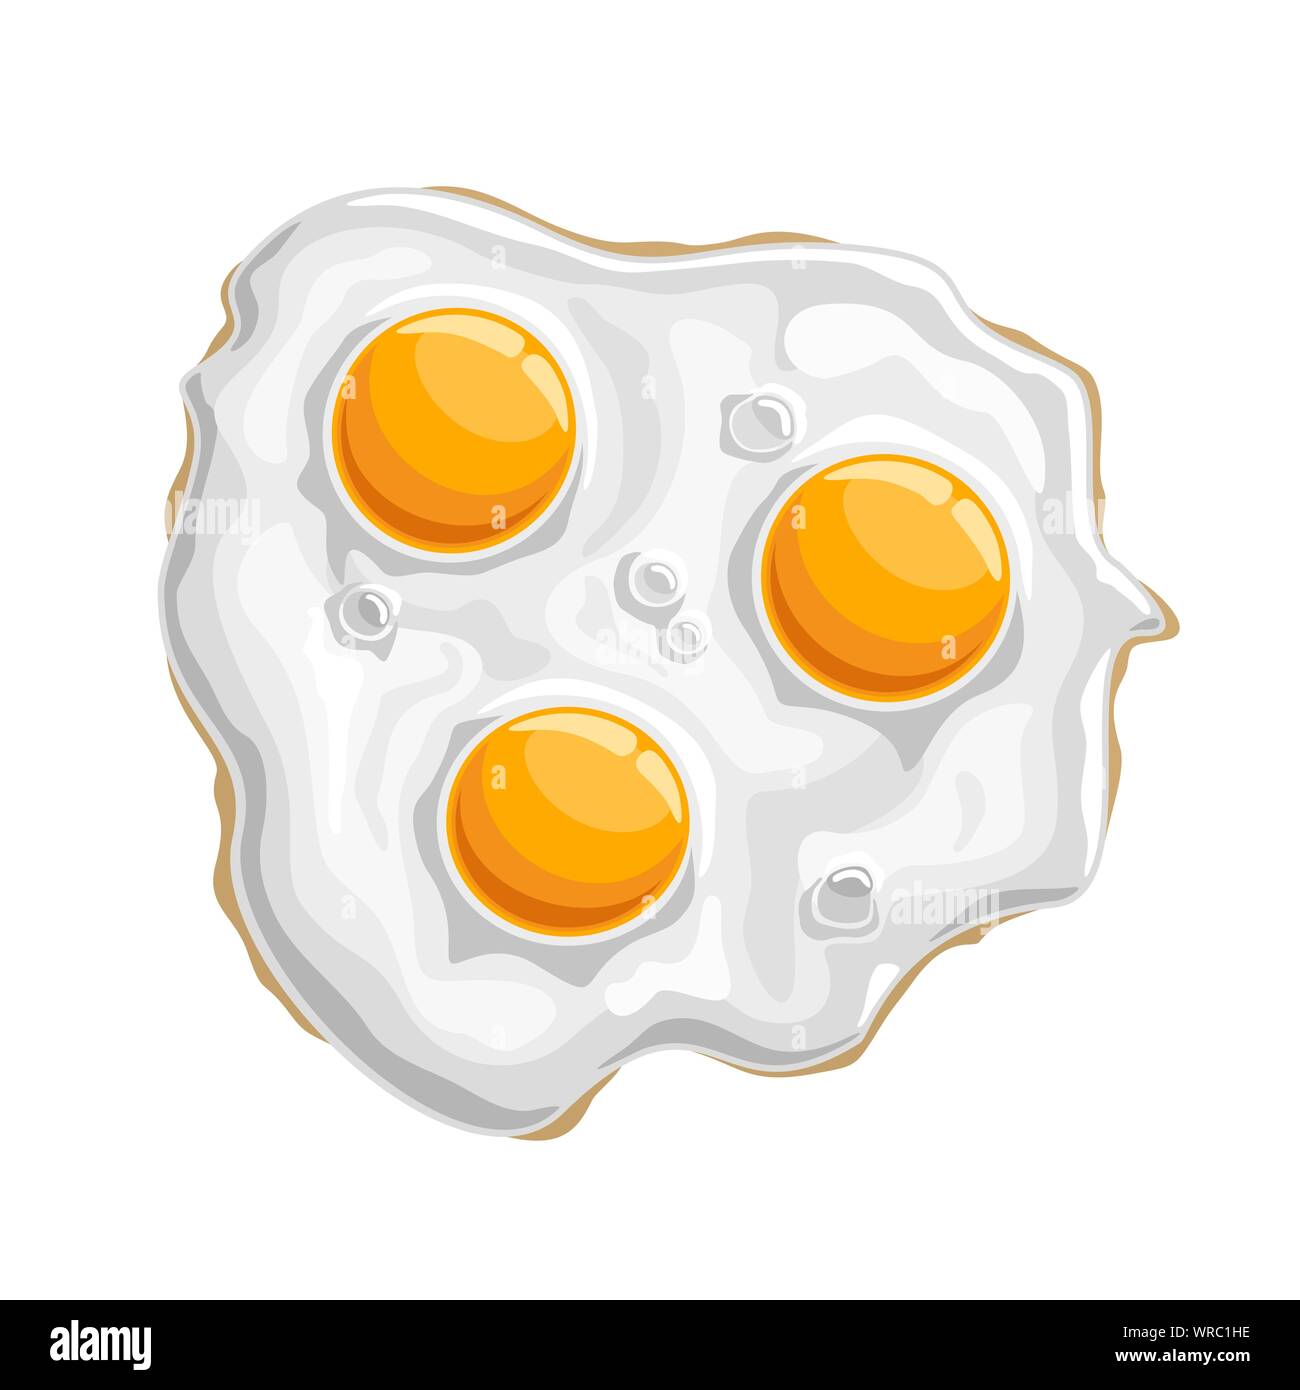 Illustrazione Vettoriale di fritto di pollo lucido uova cotte isolato di proteina di colore bianco con 3 giallo tuorlo, tradizionale fritto croccante prima colazione. Illustrazione Vettoriale